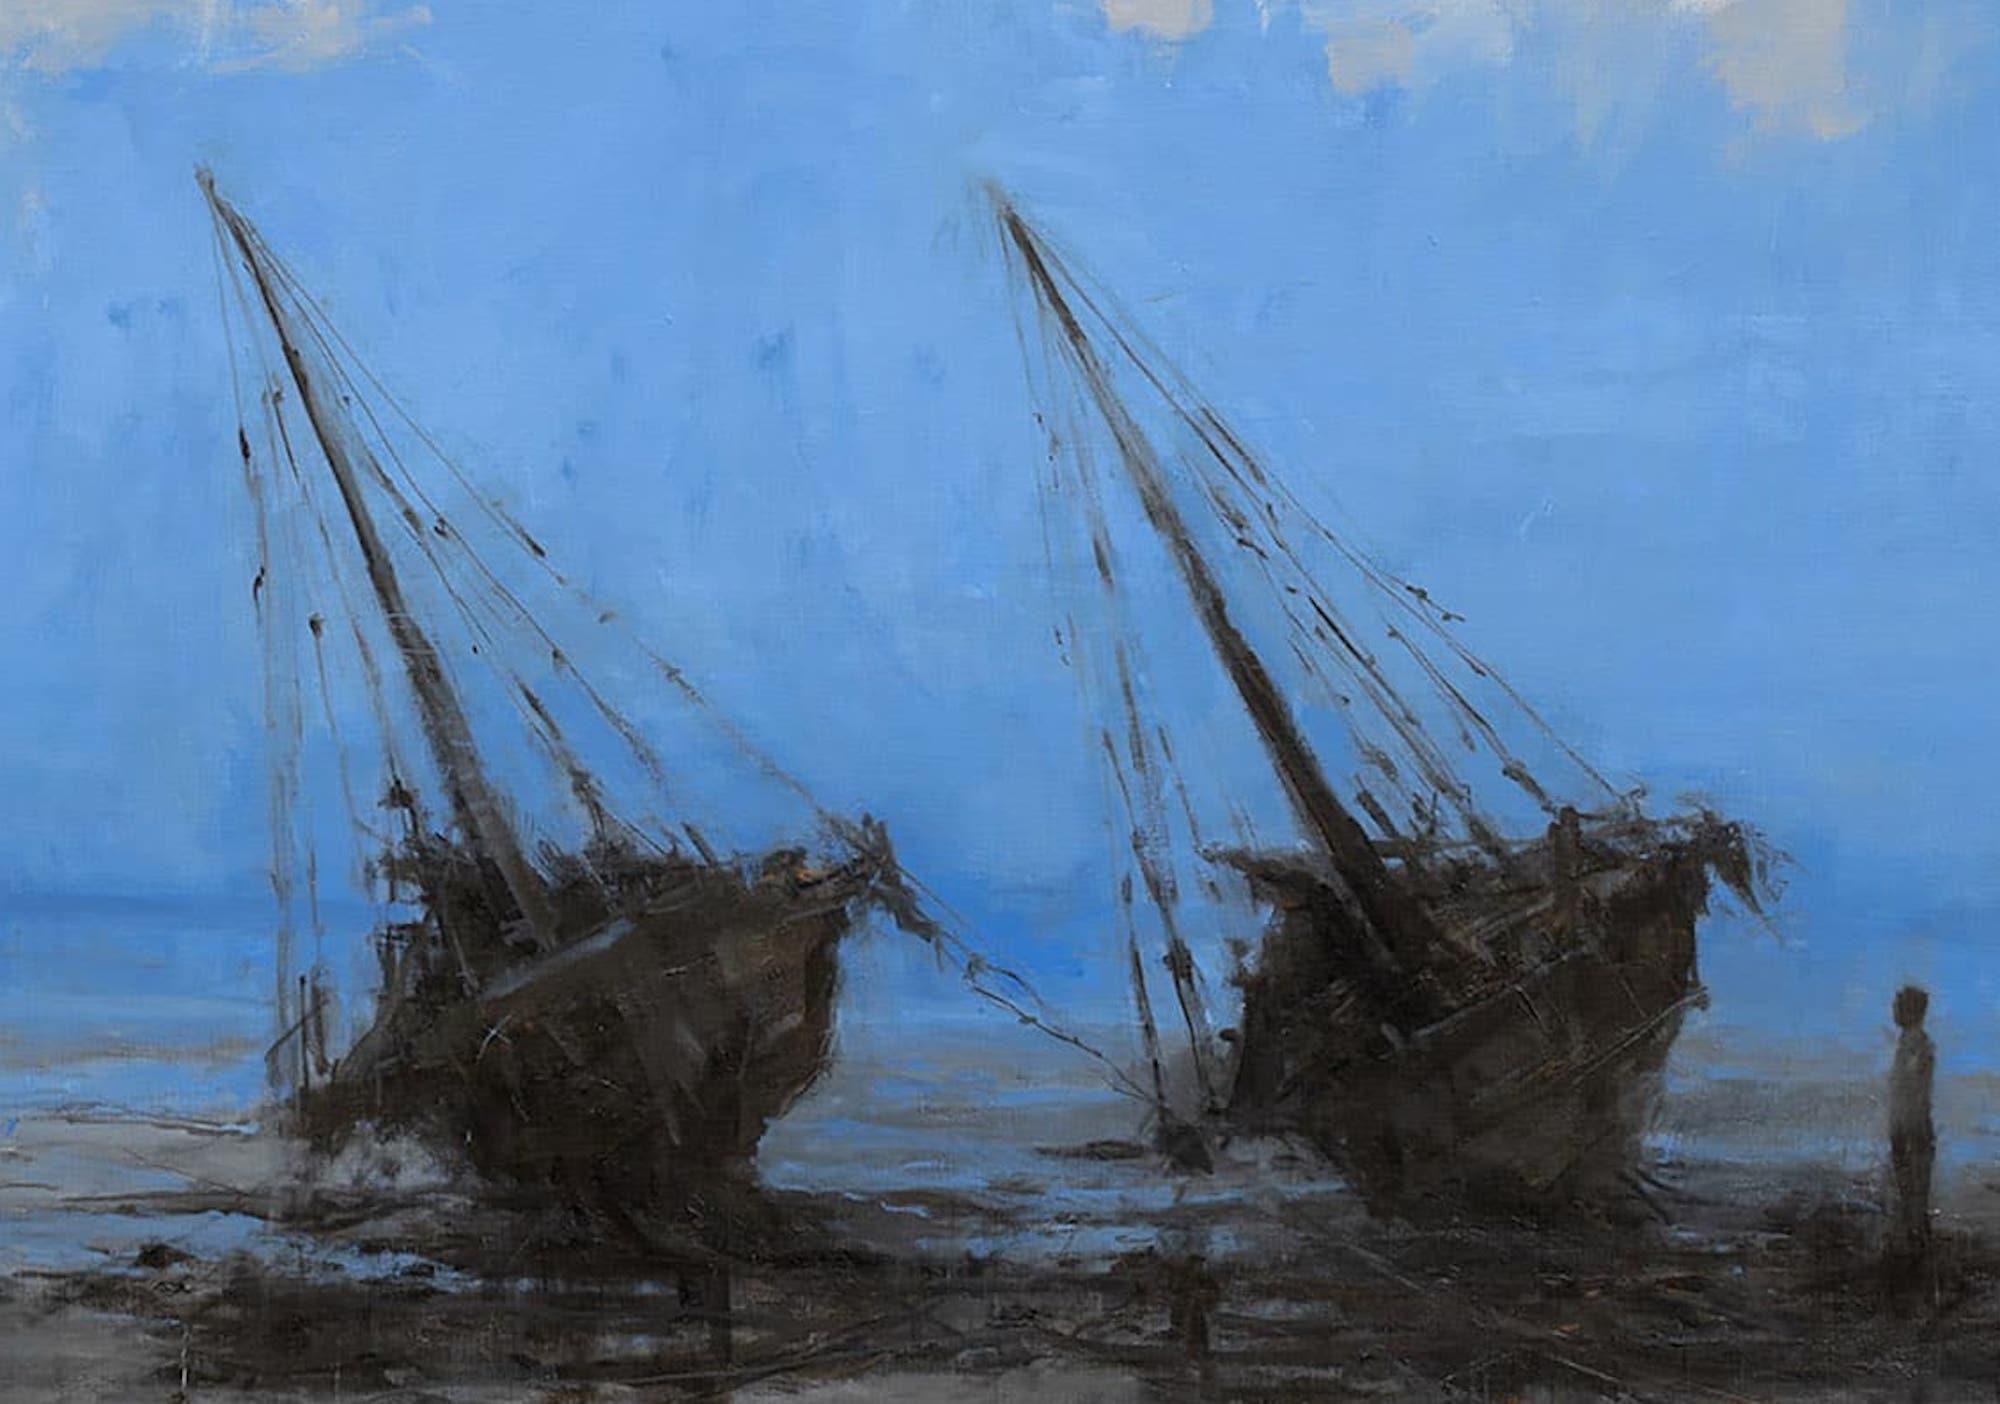 Barcas en Bagamoyo IV by Calo Carratalá - Seascape painting, blue colours, boats For Sale 4